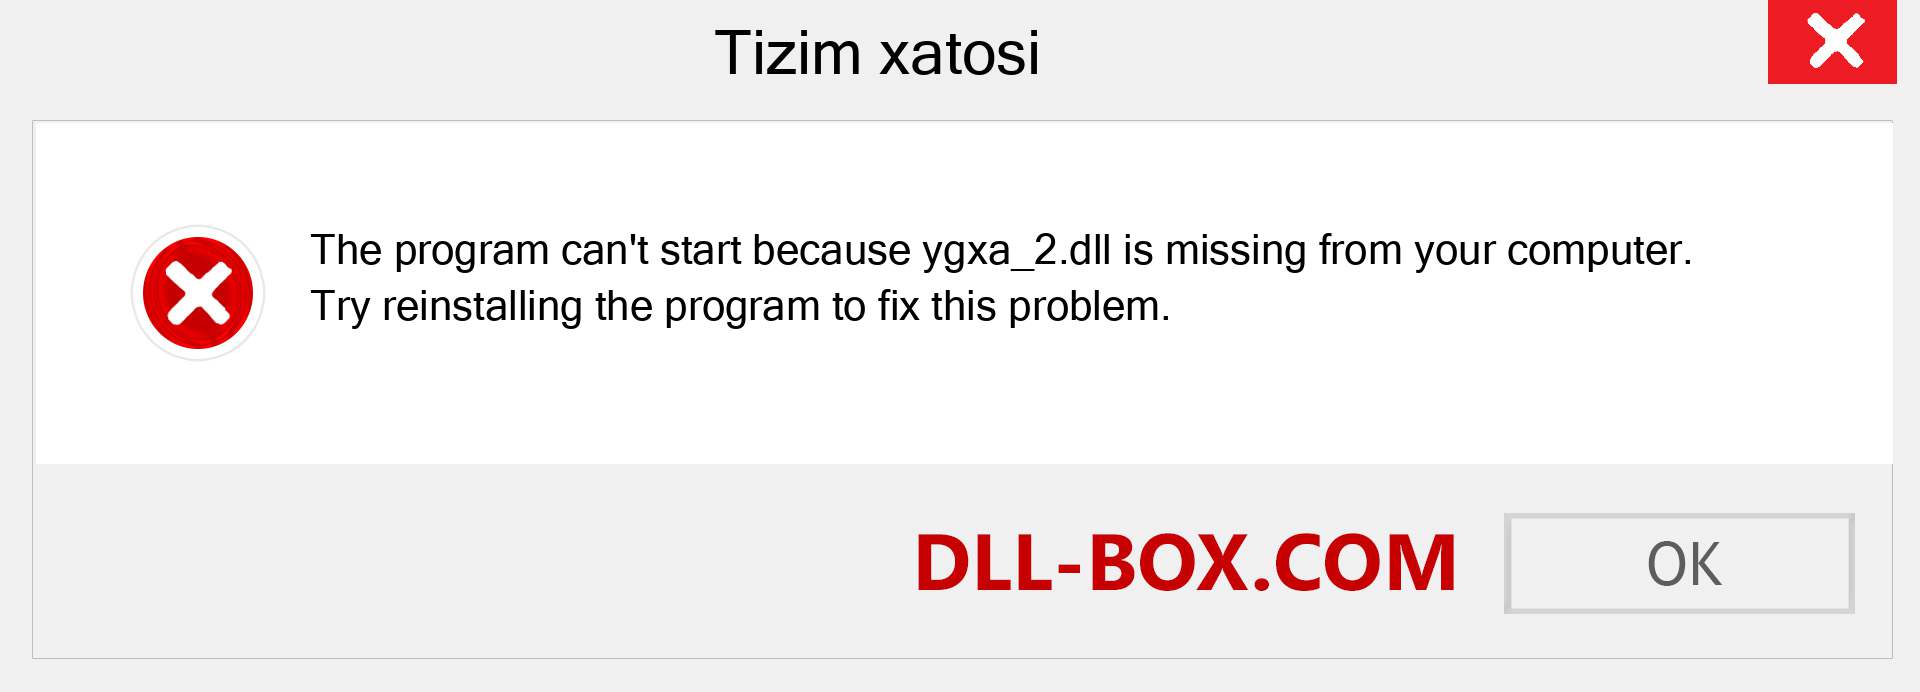 ygxa_2.dll fayli yo'qolganmi?. Windows 7, 8, 10 uchun yuklab olish - Windowsda ygxa_2 dll etishmayotgan xatoni tuzating, rasmlar, rasmlar